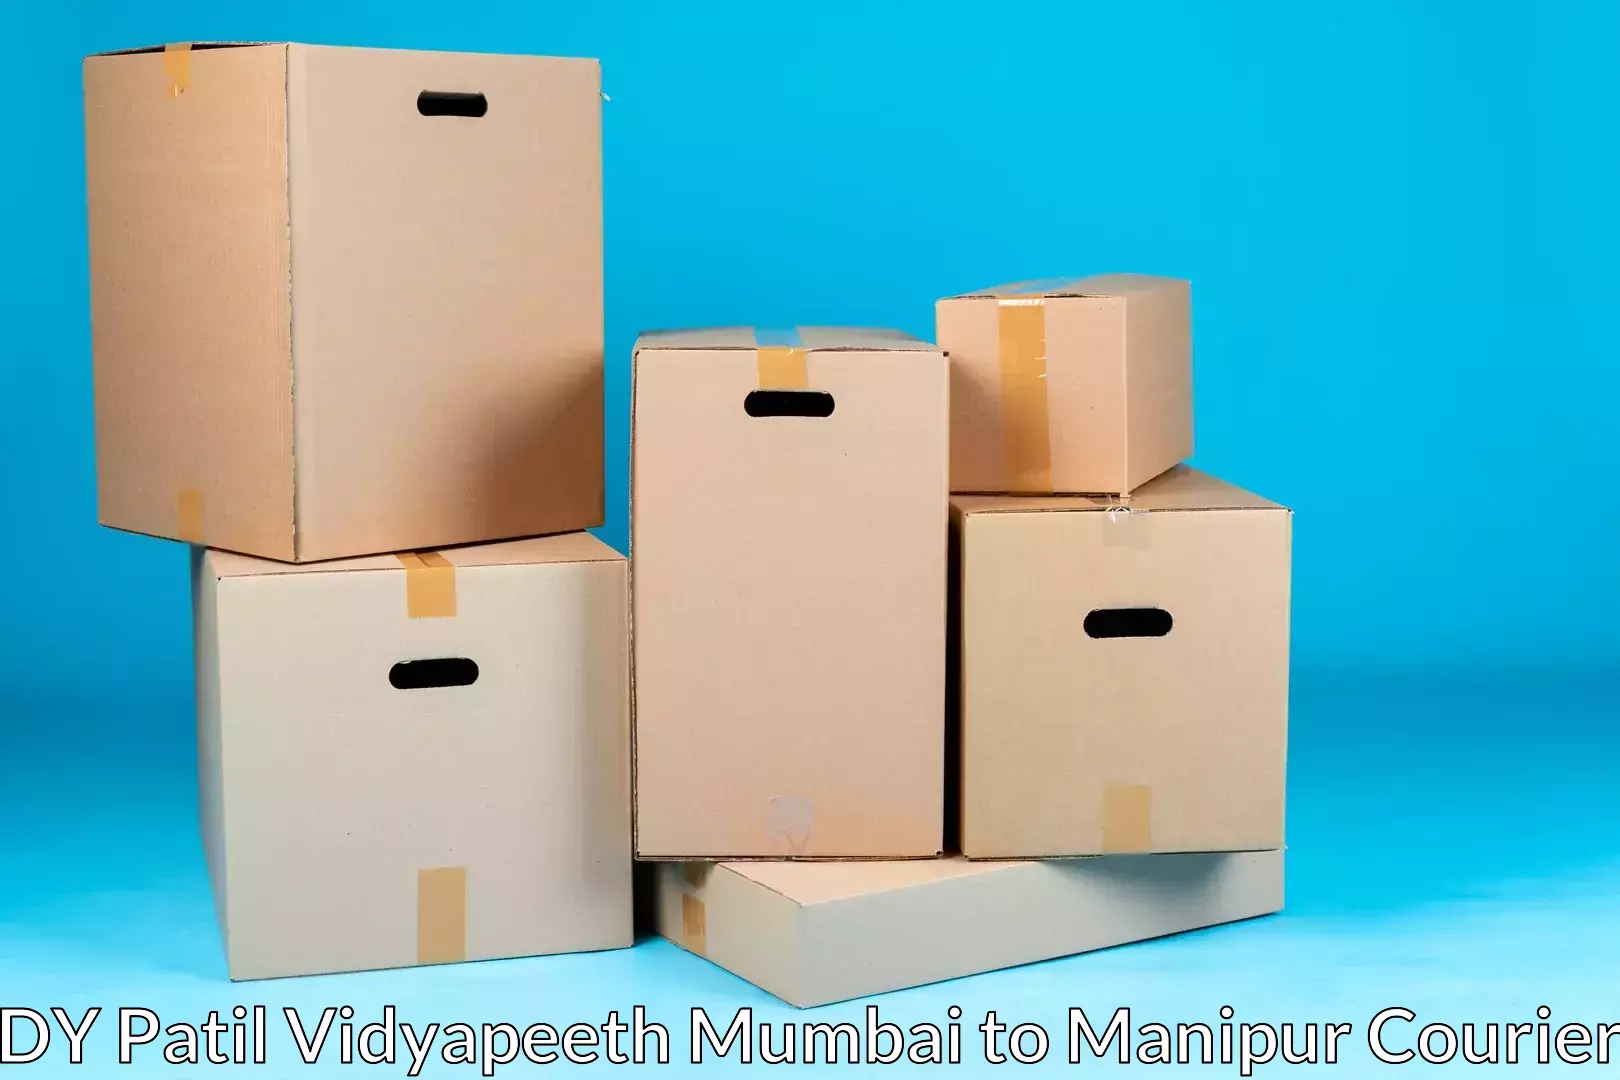 Furniture transport experts DY Patil Vidyapeeth Mumbai to Moirang